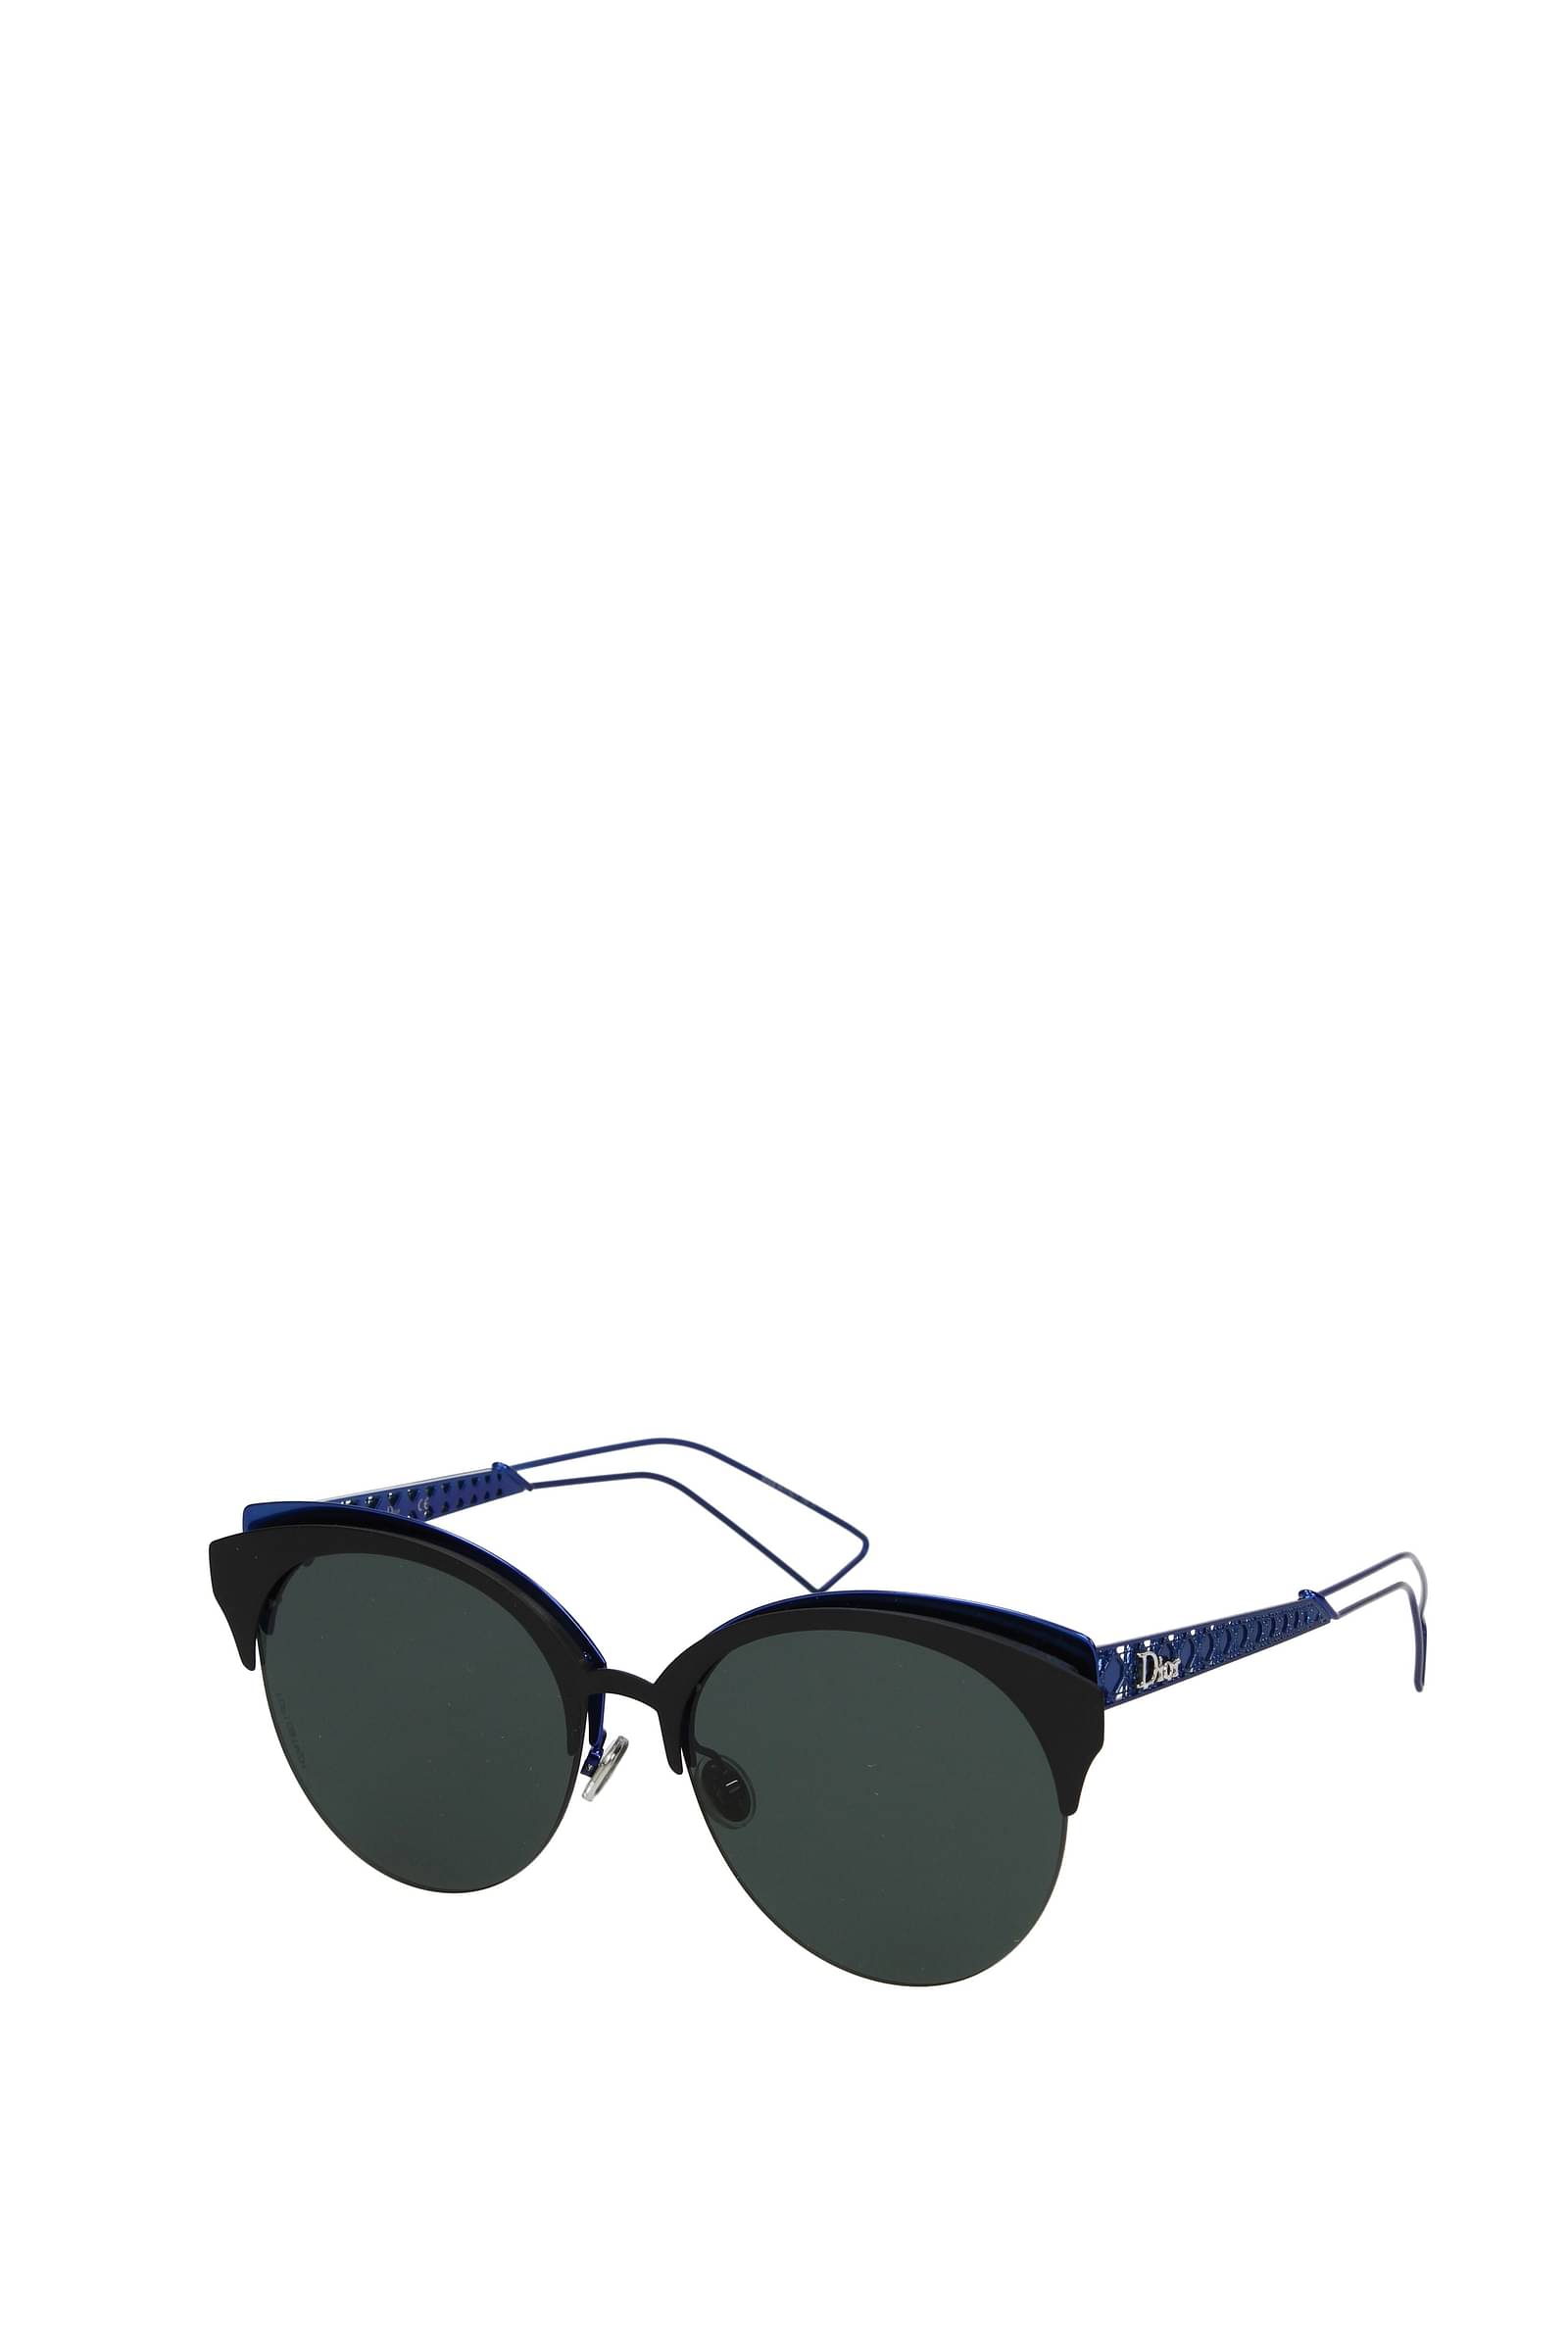 Dior Eyewear Sunglasses  FARFETCH